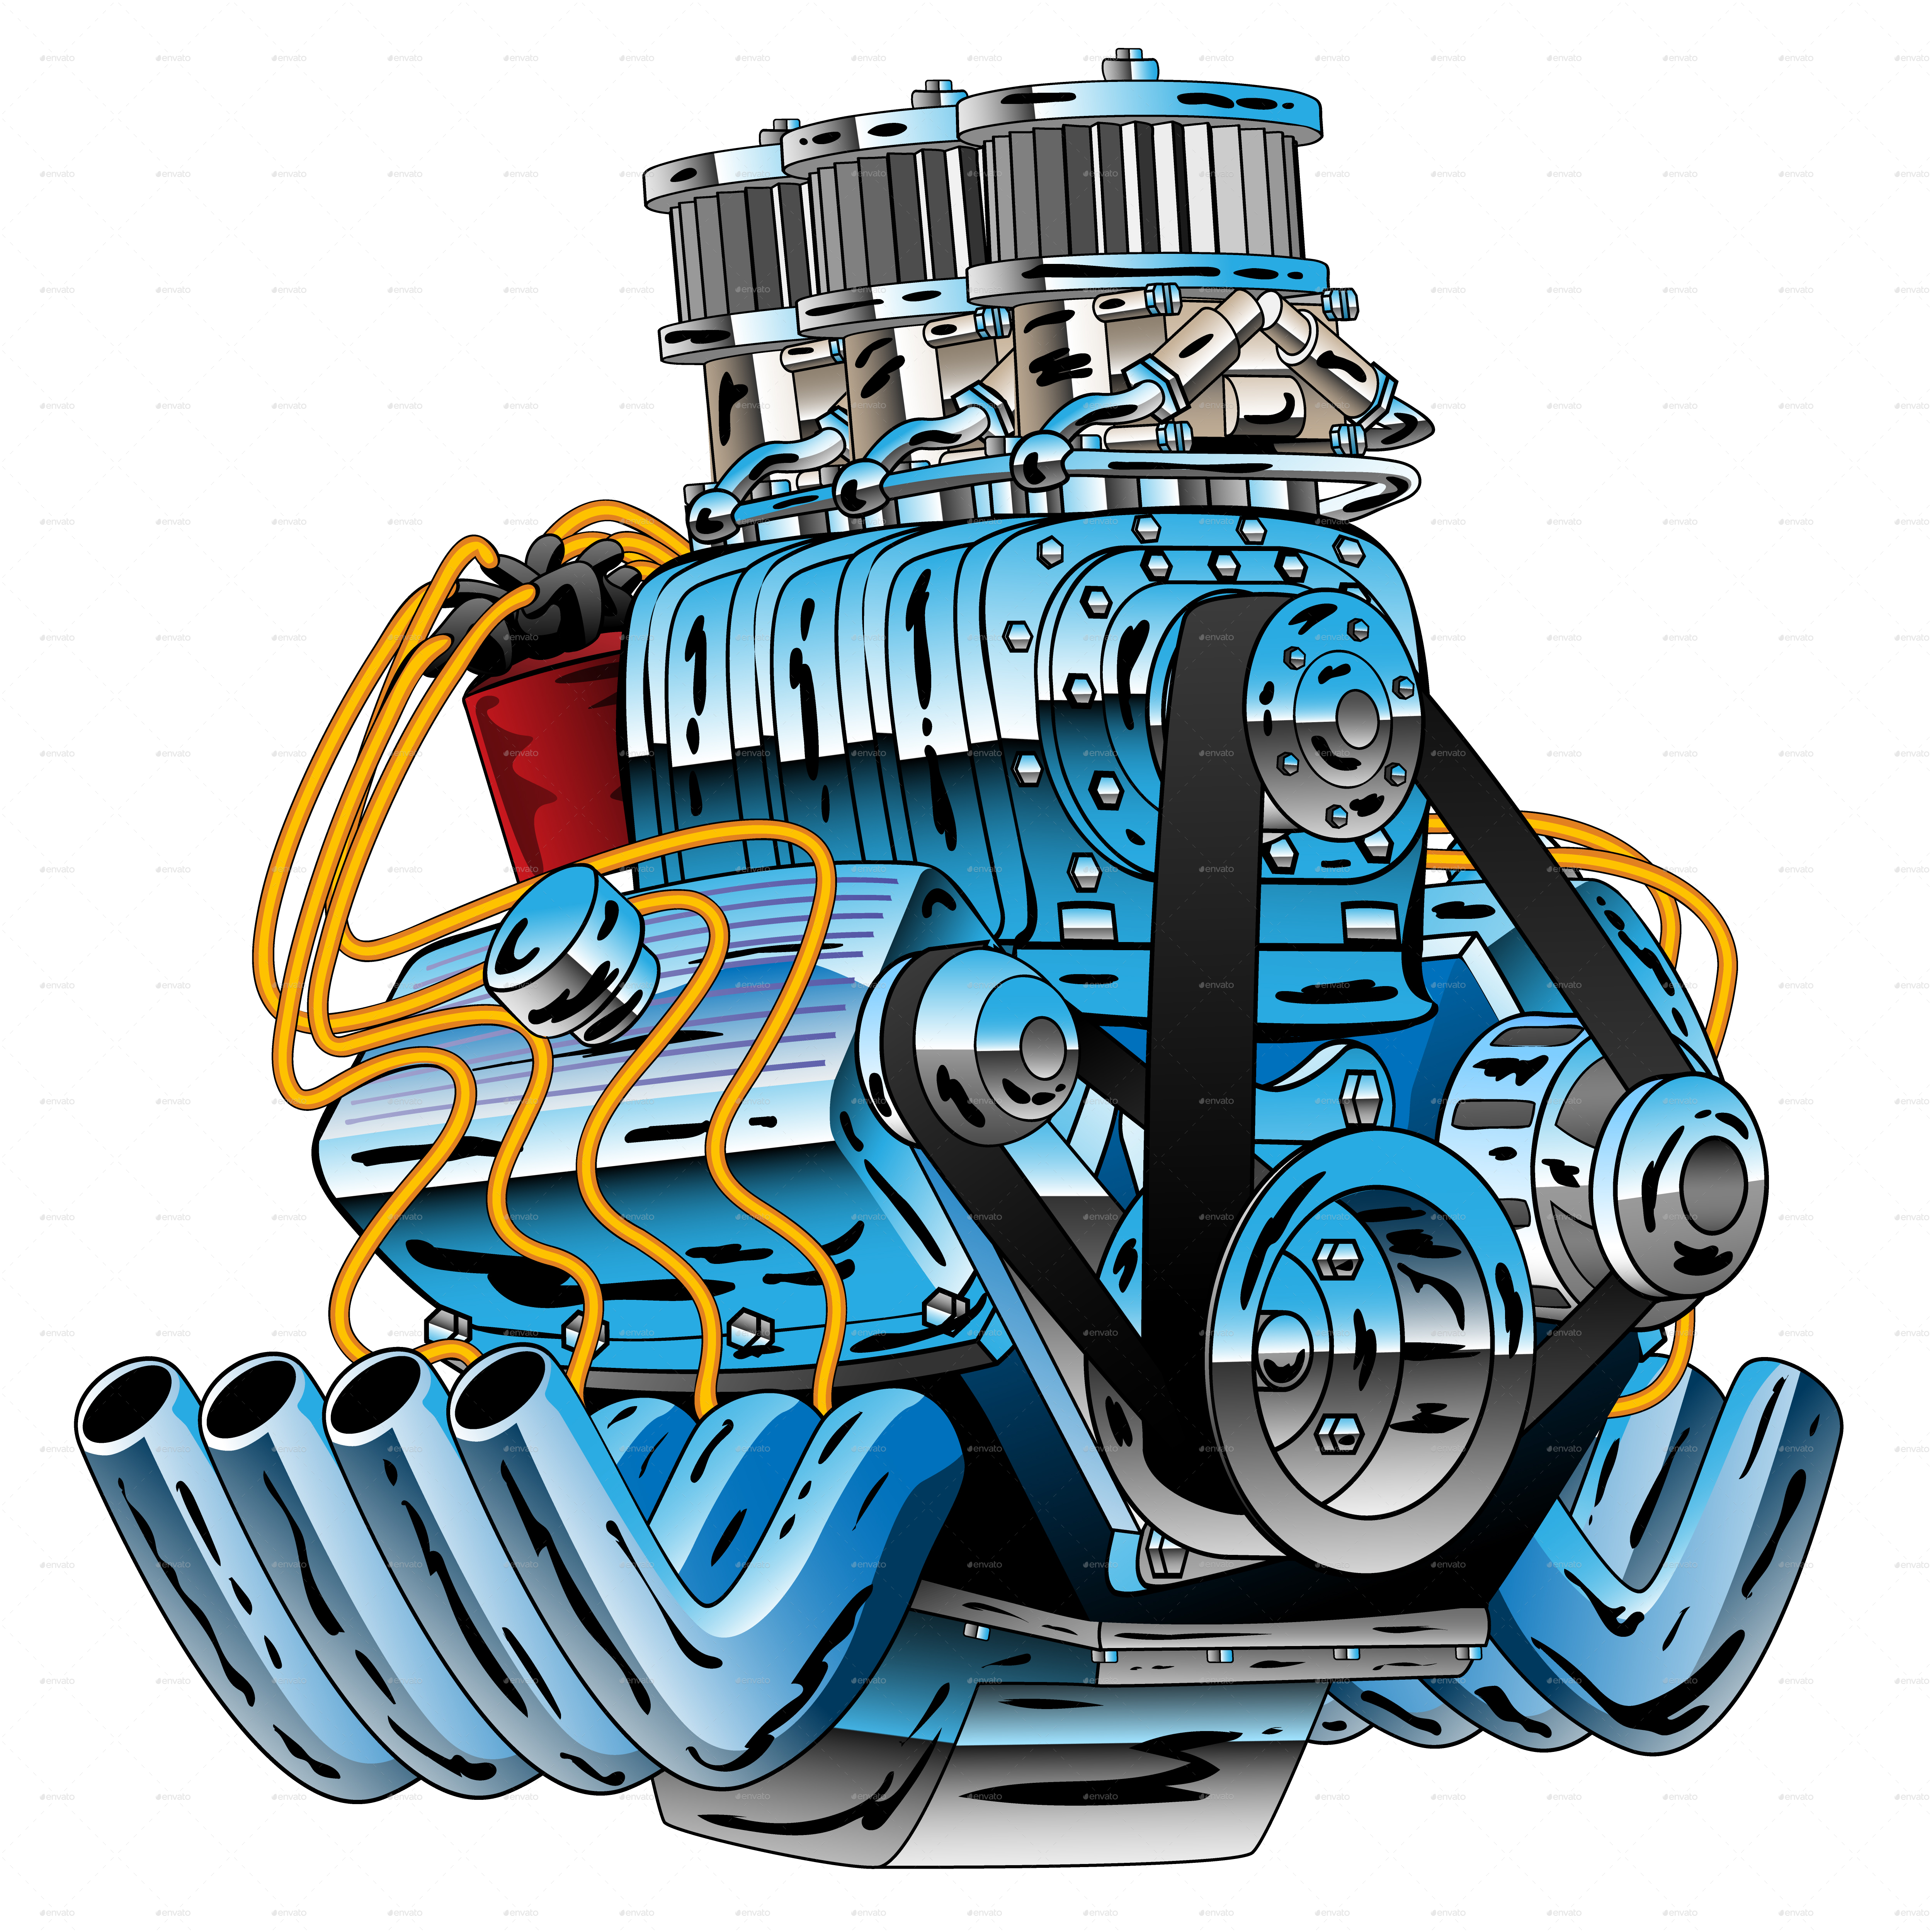 Hot Rod Race Car Dragster Engine Cartoon Vector by jeffhobrath